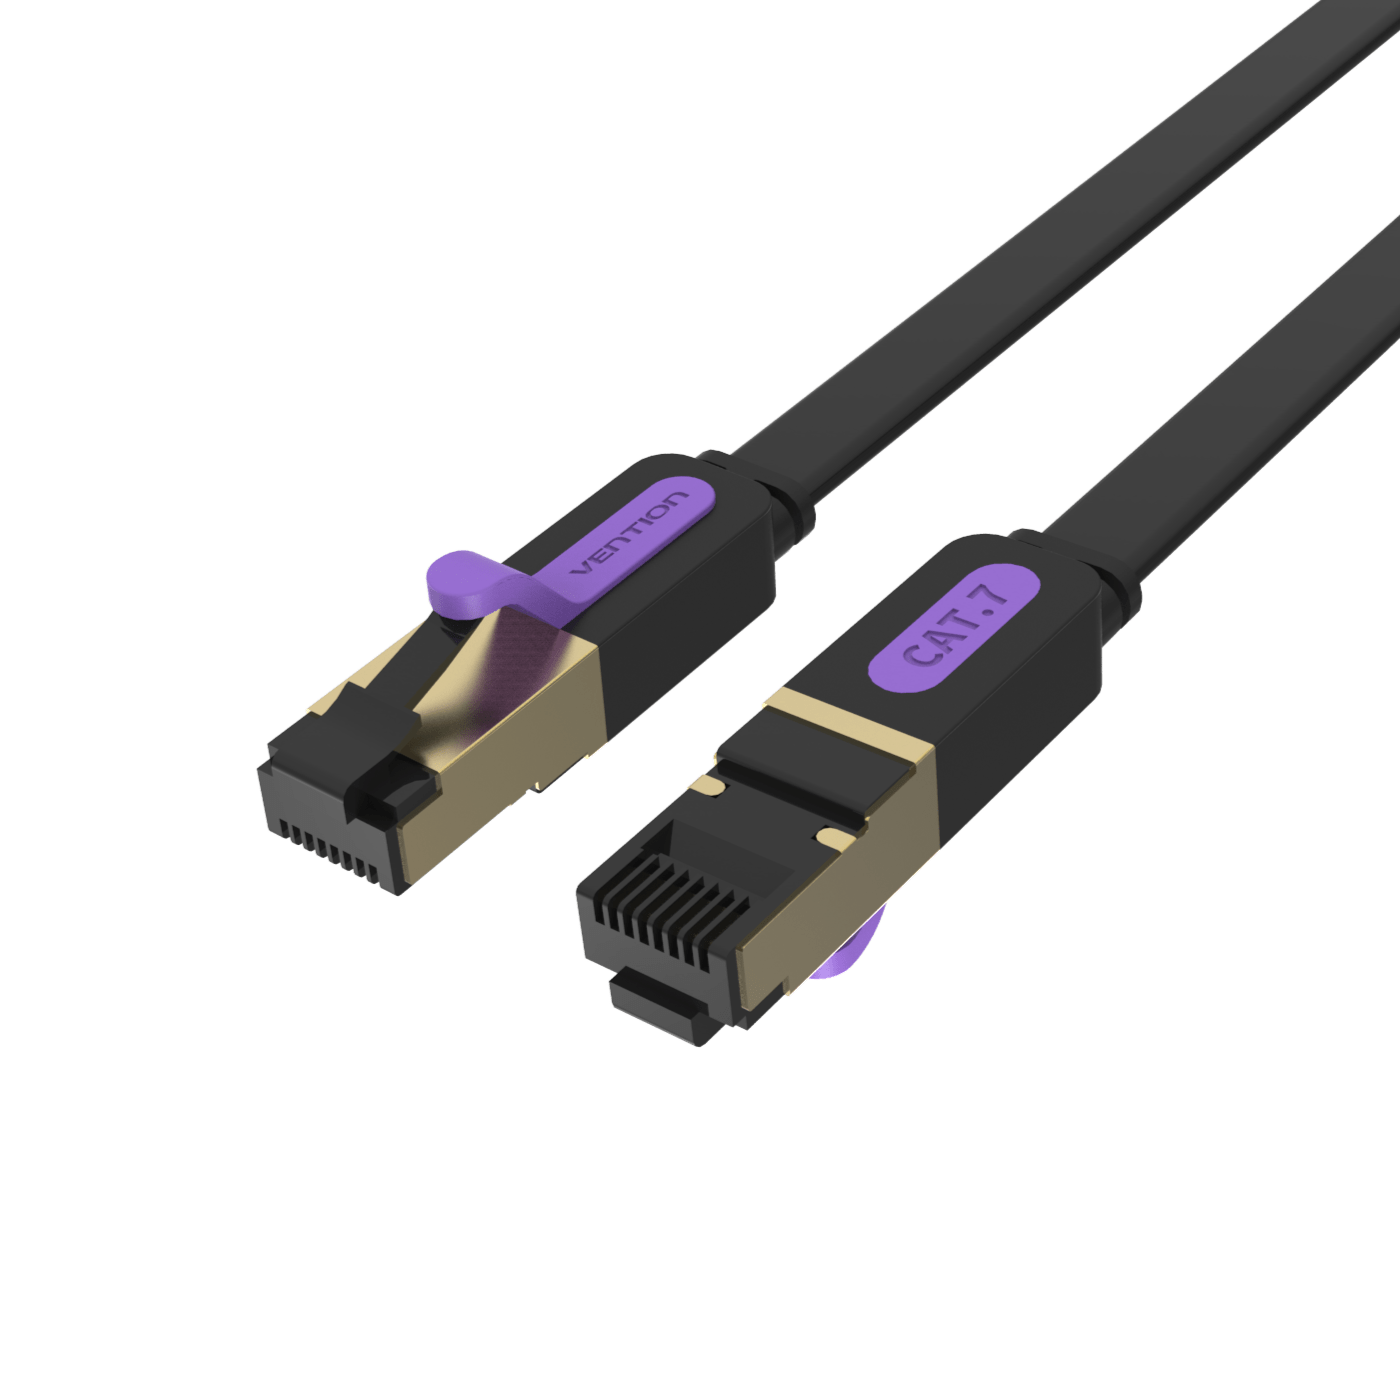 CAT 7 Ethernet Cable RJ45 Cat7 Lan Cable 1M 2M 3M 5M 10M RJ 45 Flat